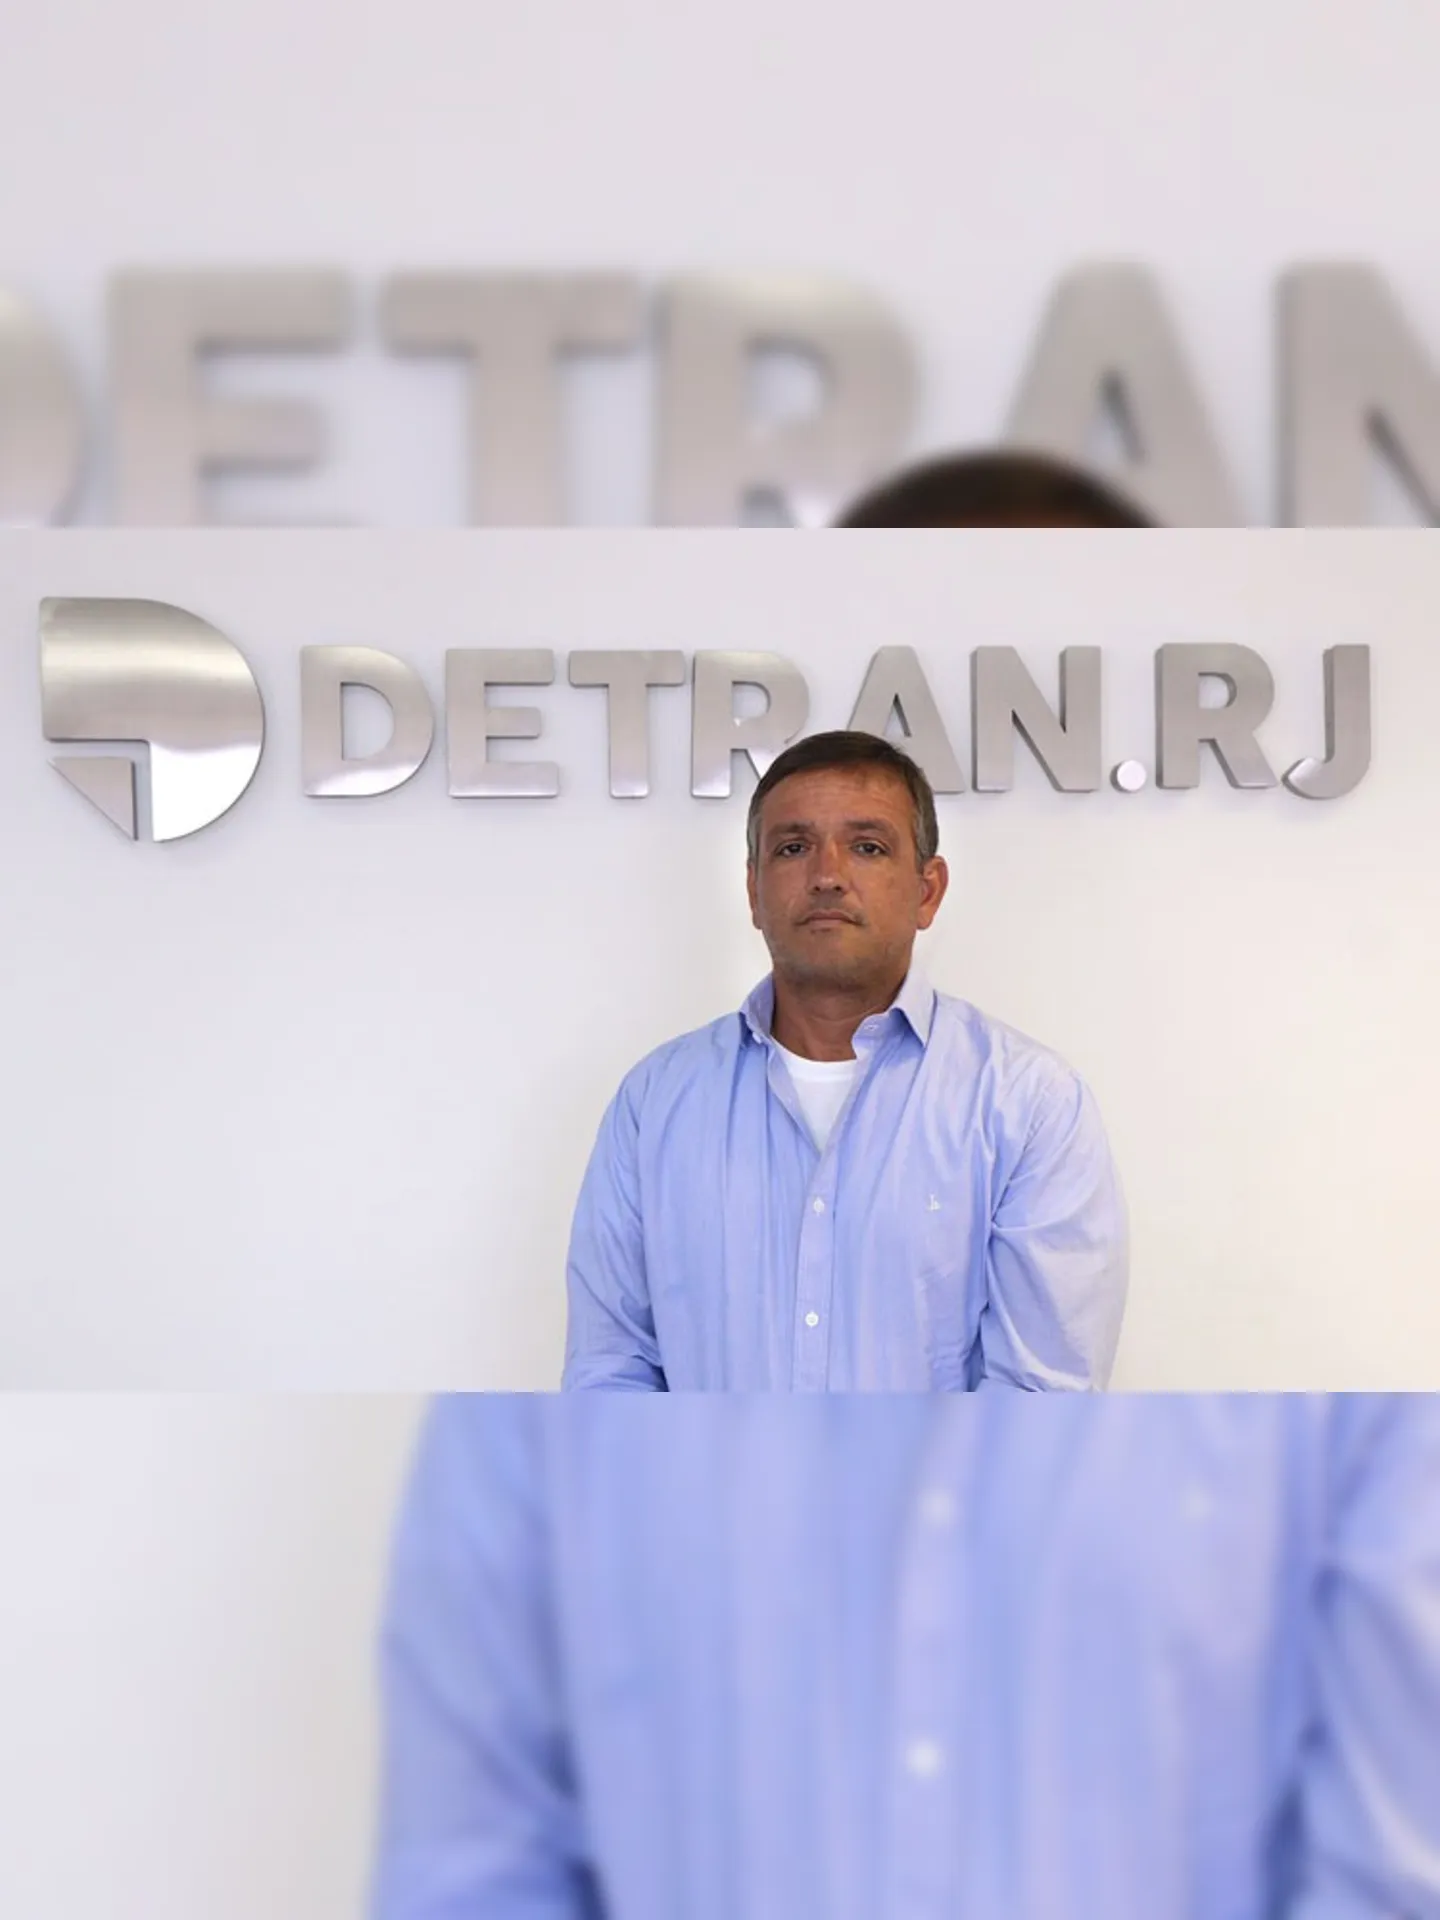 O novo presidente do Detran.RJ, Glaucio Paz, de 49 anos, tomou posse nesta quinta-feira (16)